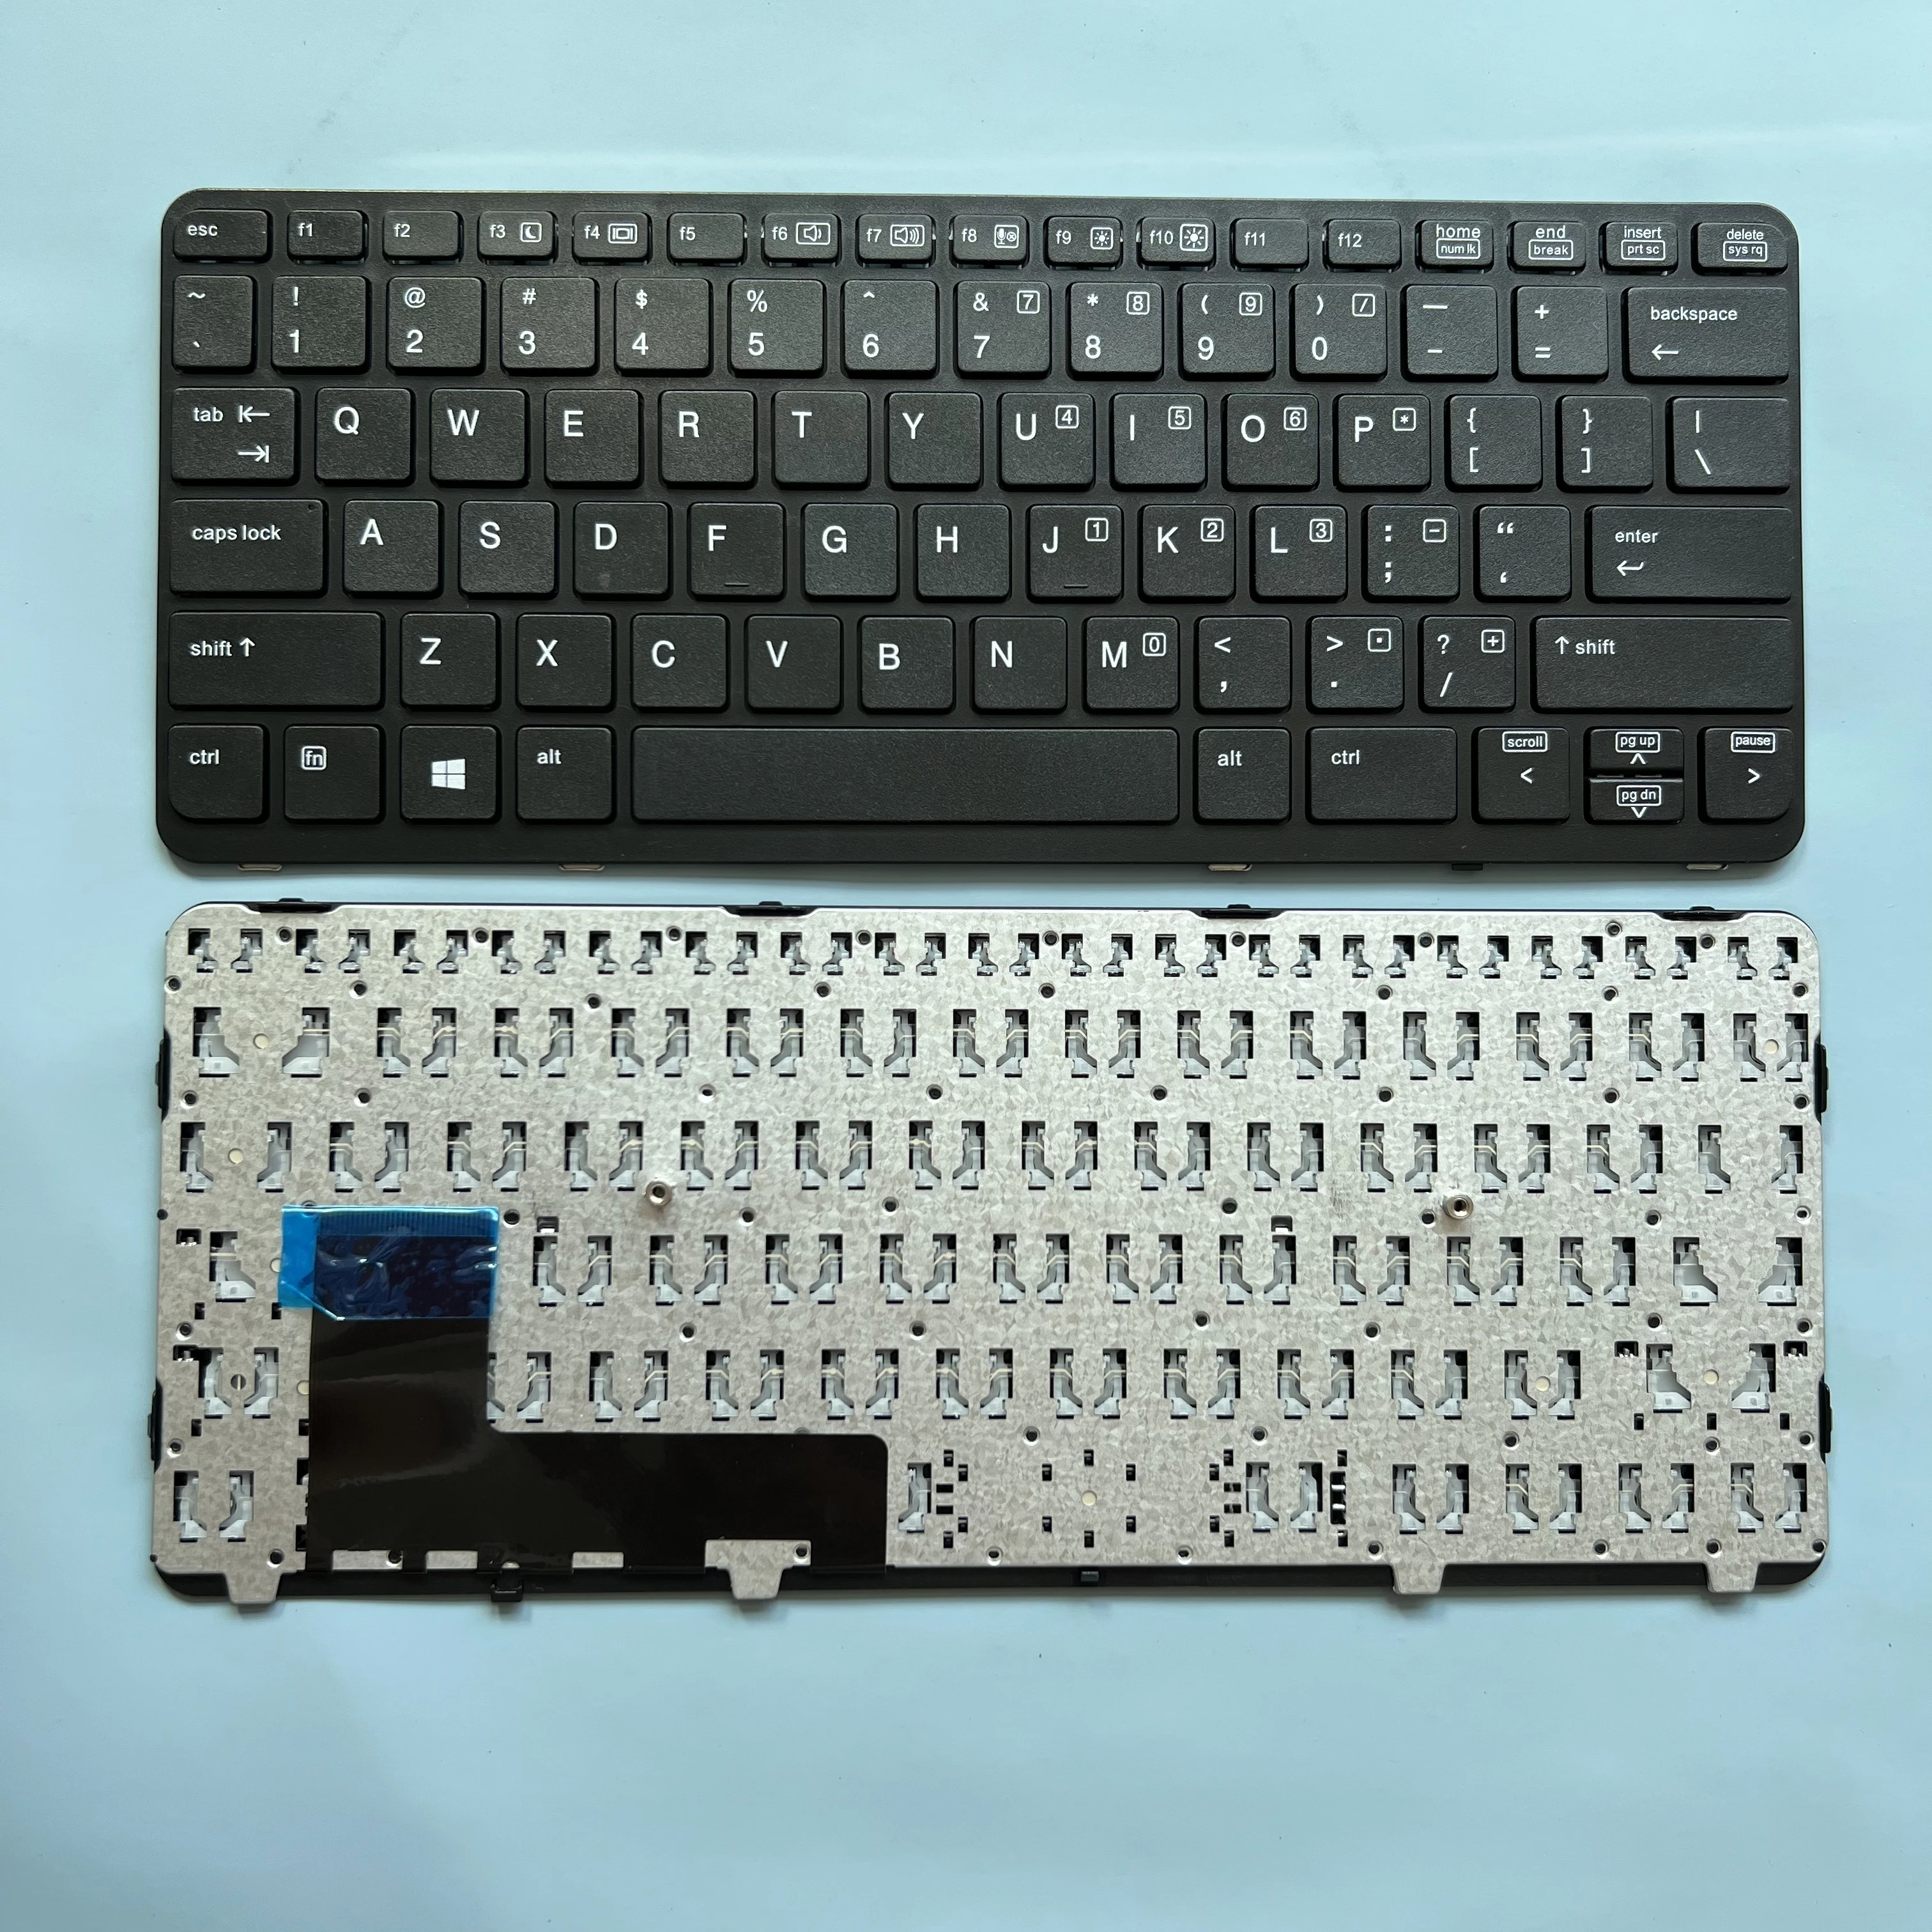 

Клавиатура XIN US для ноутбука HP EliteBook 820 G1 820 G2 720 g1 g2 725 G1 G2 730540 G1 G2 820g1, новая английская клавиатура для ноутбука-001